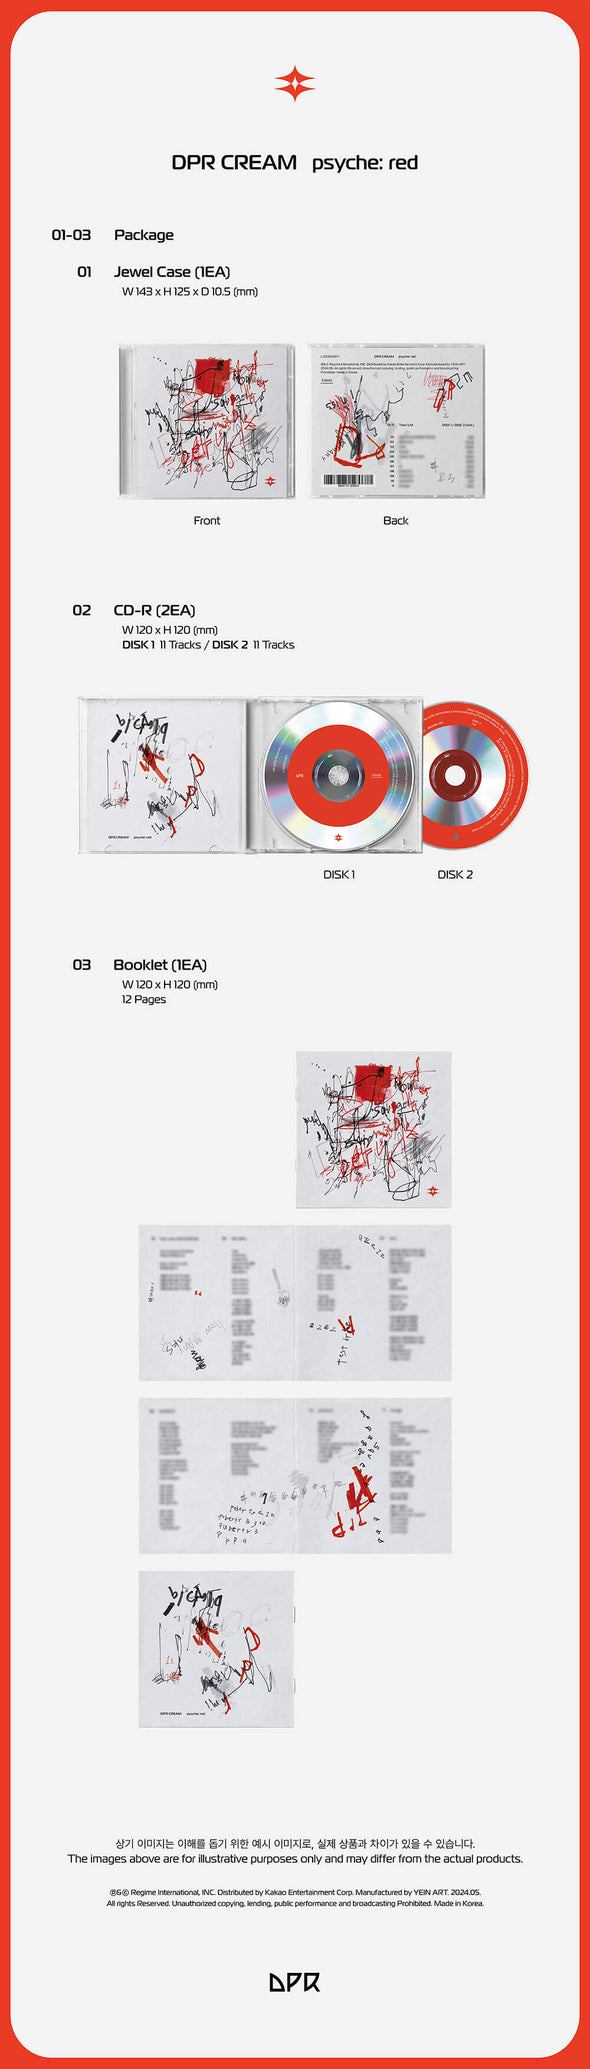 DPR CREAM - Full Album (psyche: red)